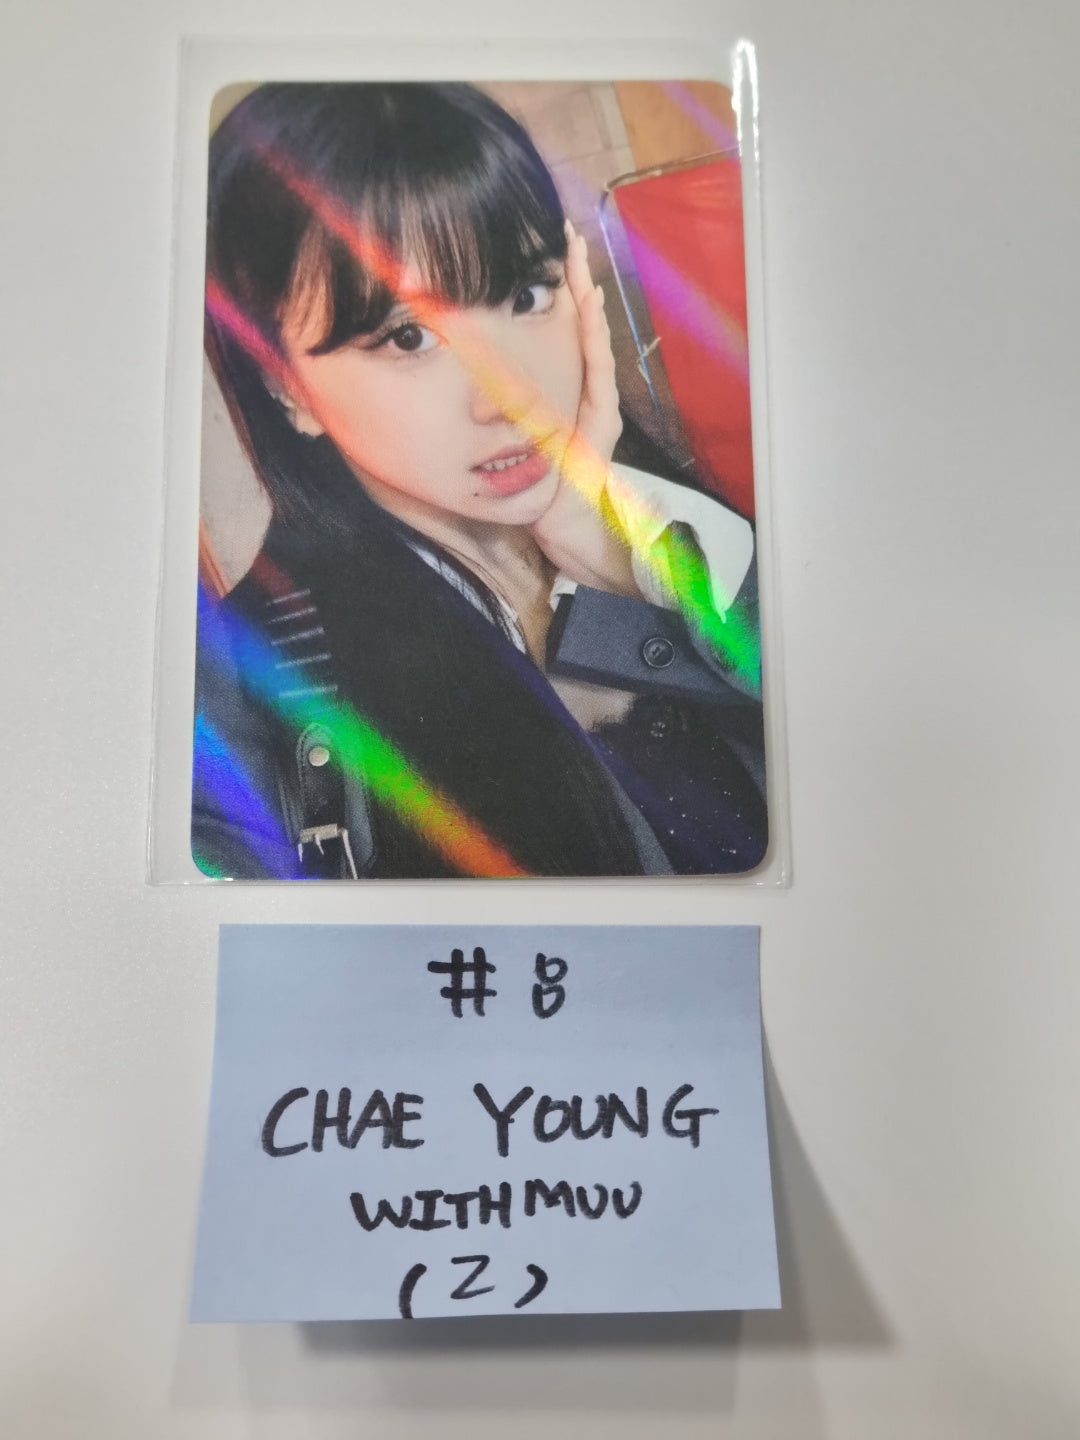 트와이스 "BETWEEN 1&amp;2" 11th Mini Album - Withmuu 팬사인회 이벤트 홀로그램 포토카드